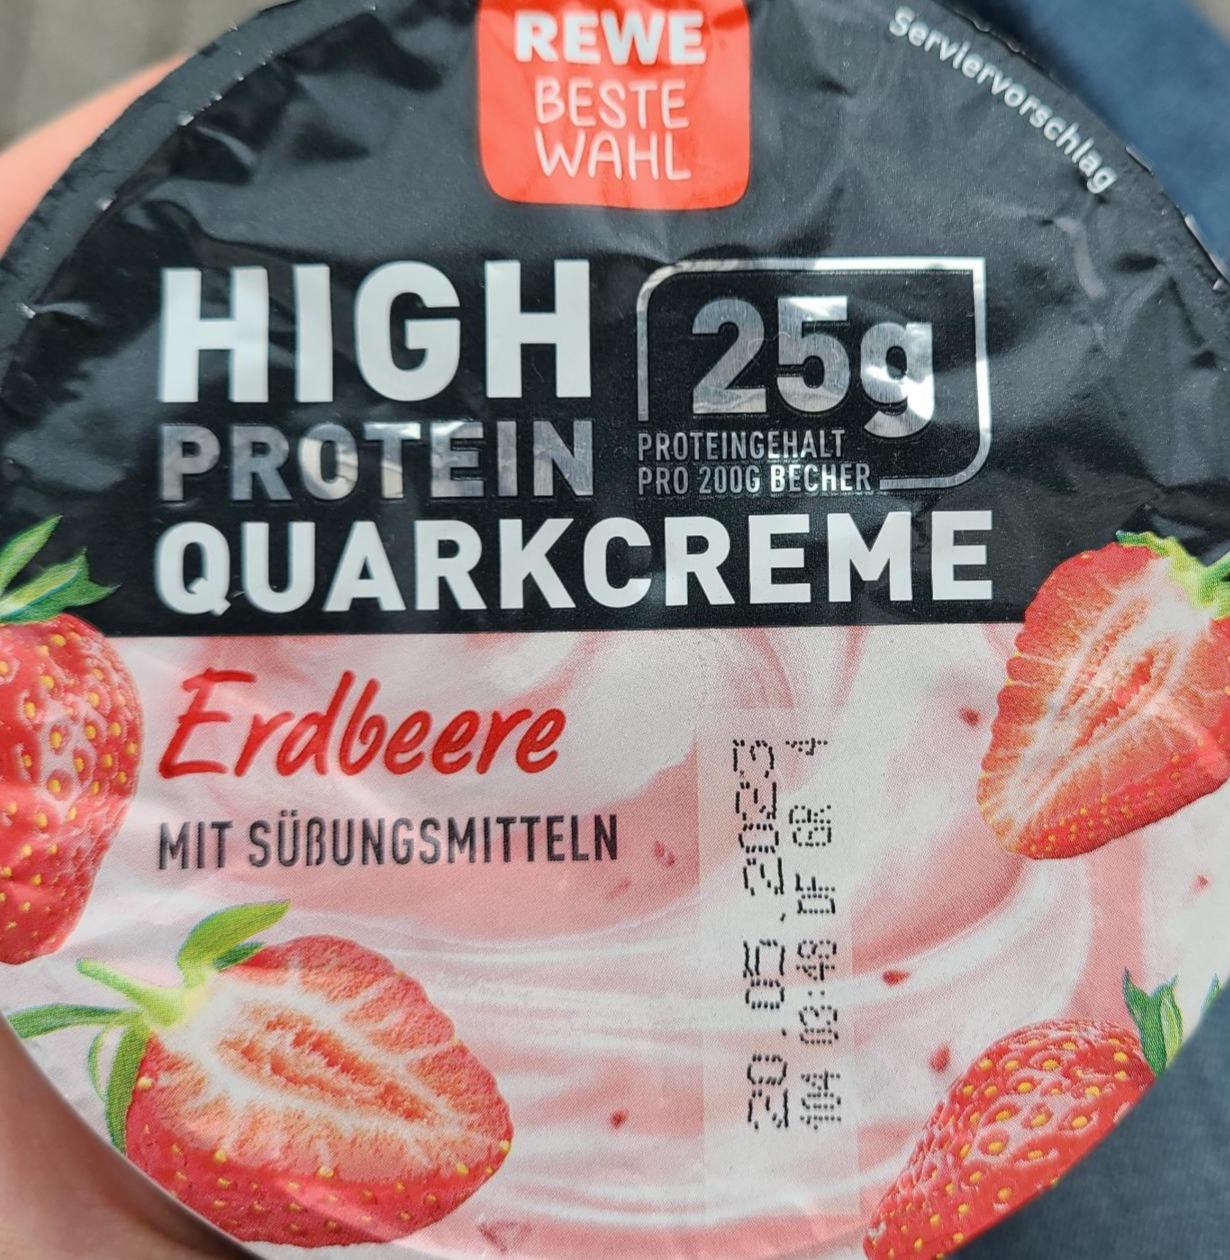 Фото - High Protein Quarkcreme Erdbeere Rewe